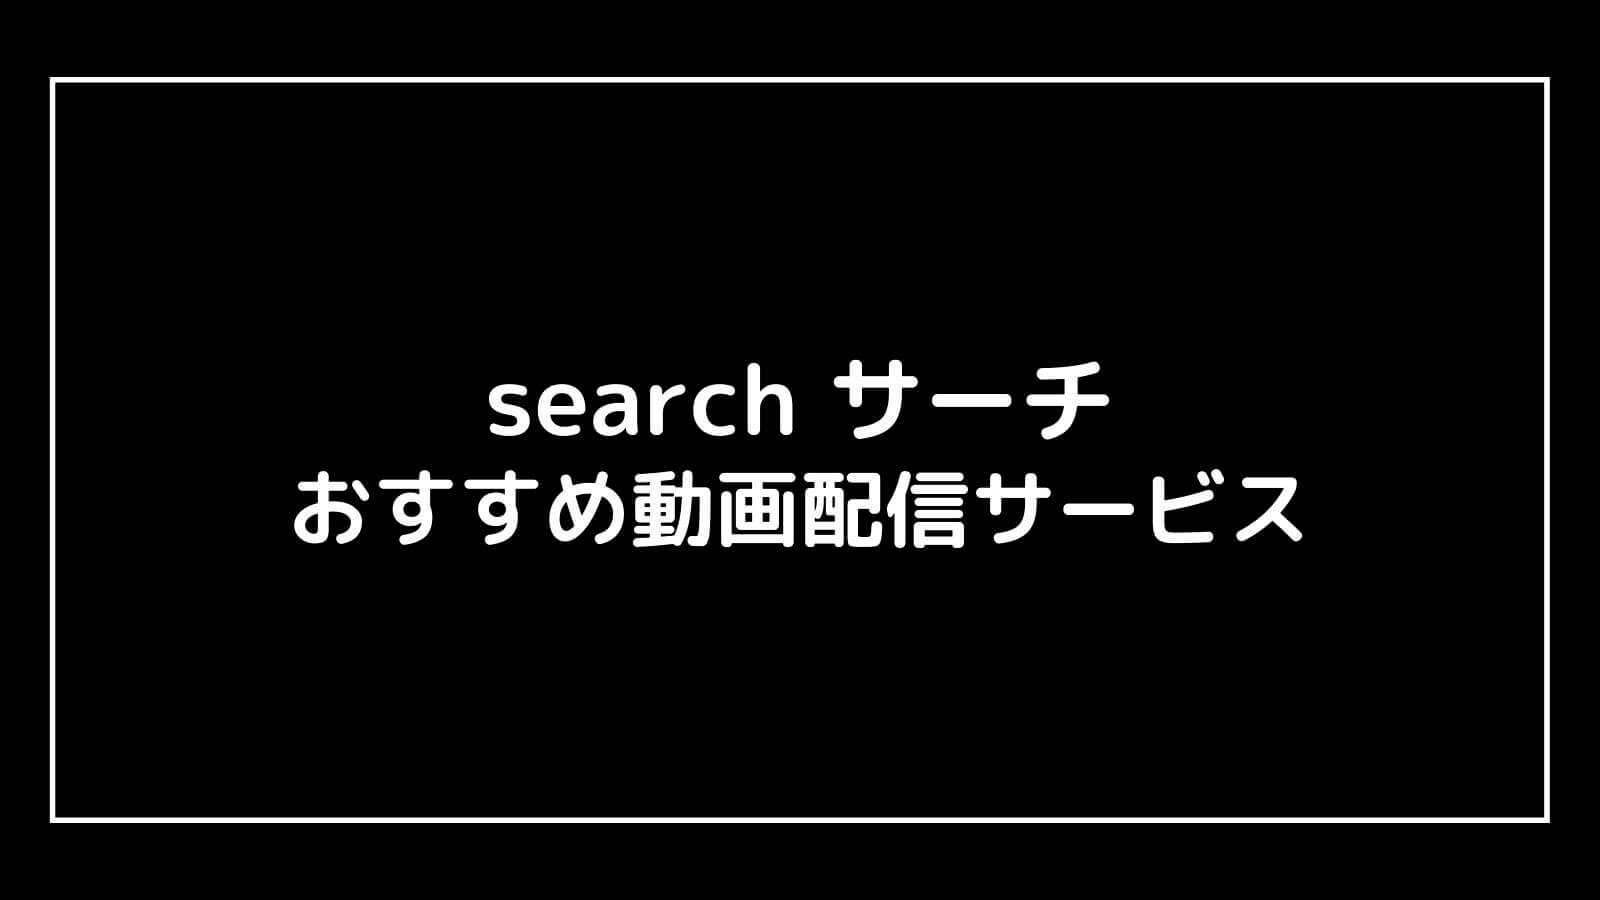 映画『search サーチ』を無料視聴できるおすすめ動画配信サービス